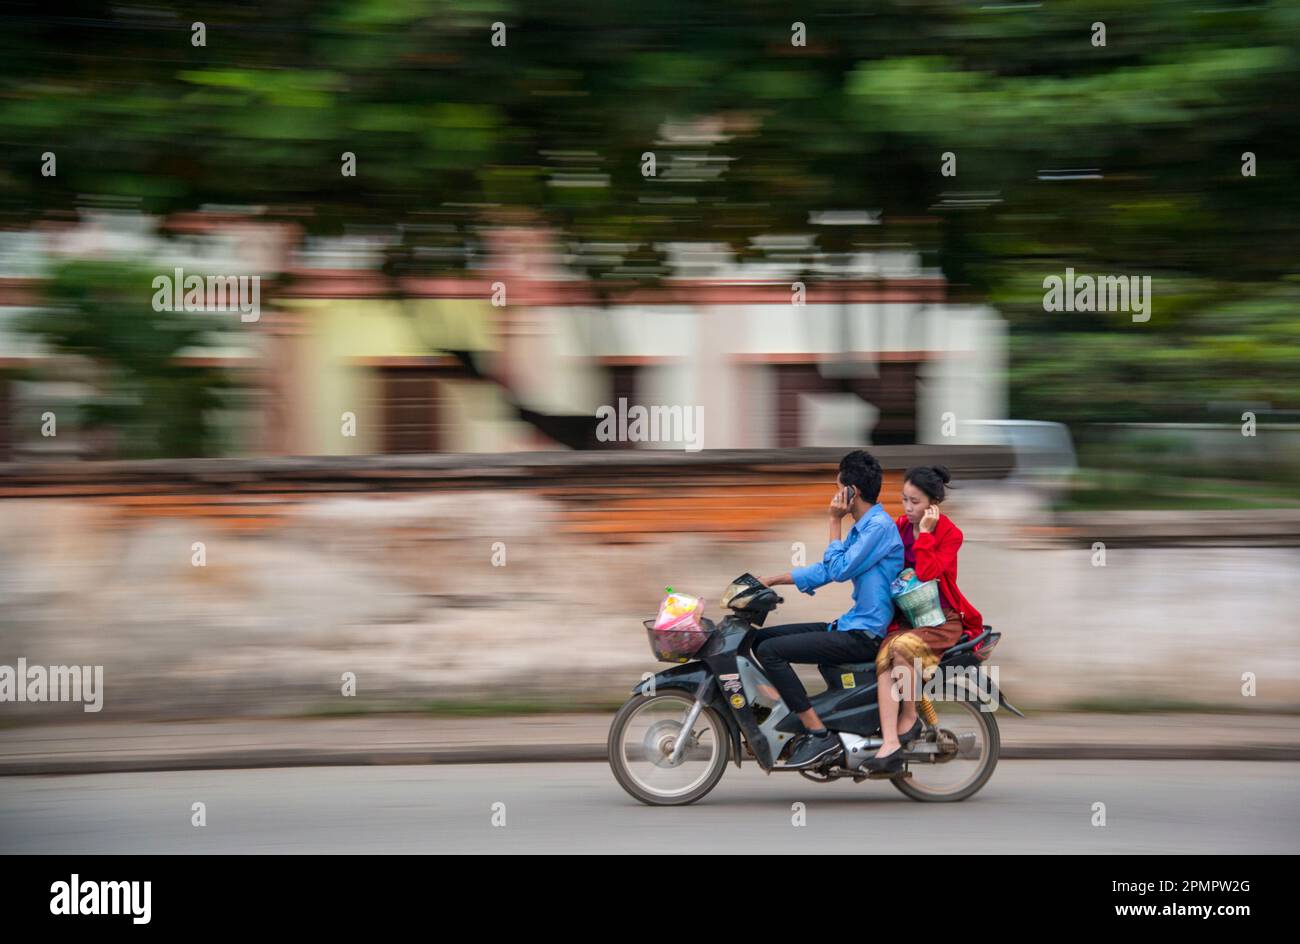 Un motociclista y su jinete hablan por teléfono celular mientras están en marcha. Foto de stock